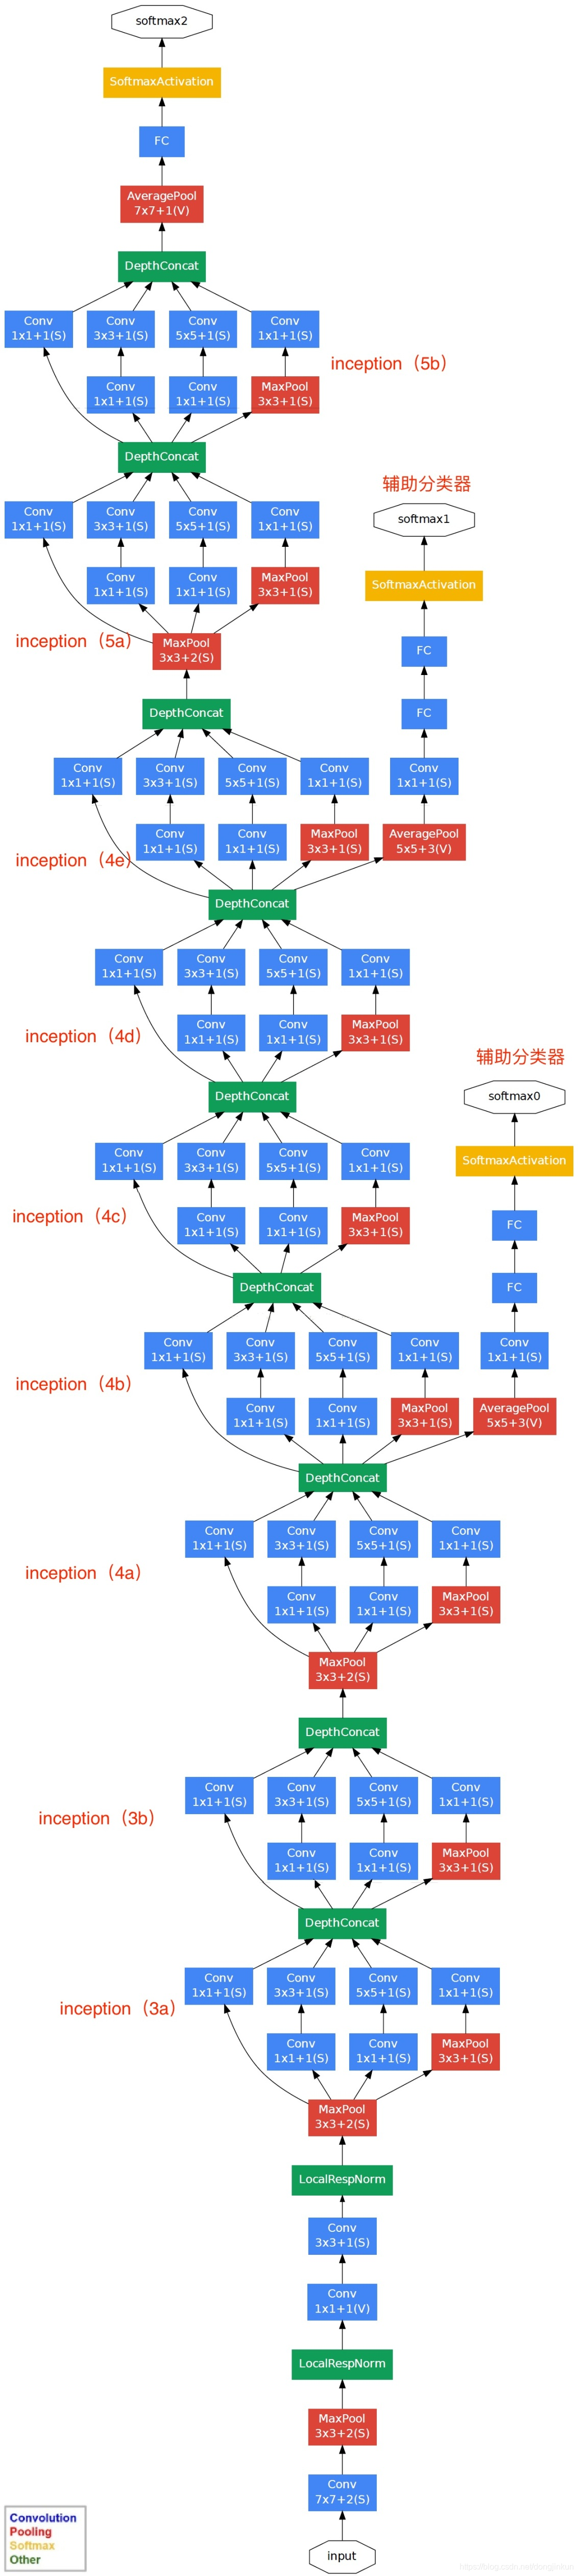 GoogLeNet网络结构